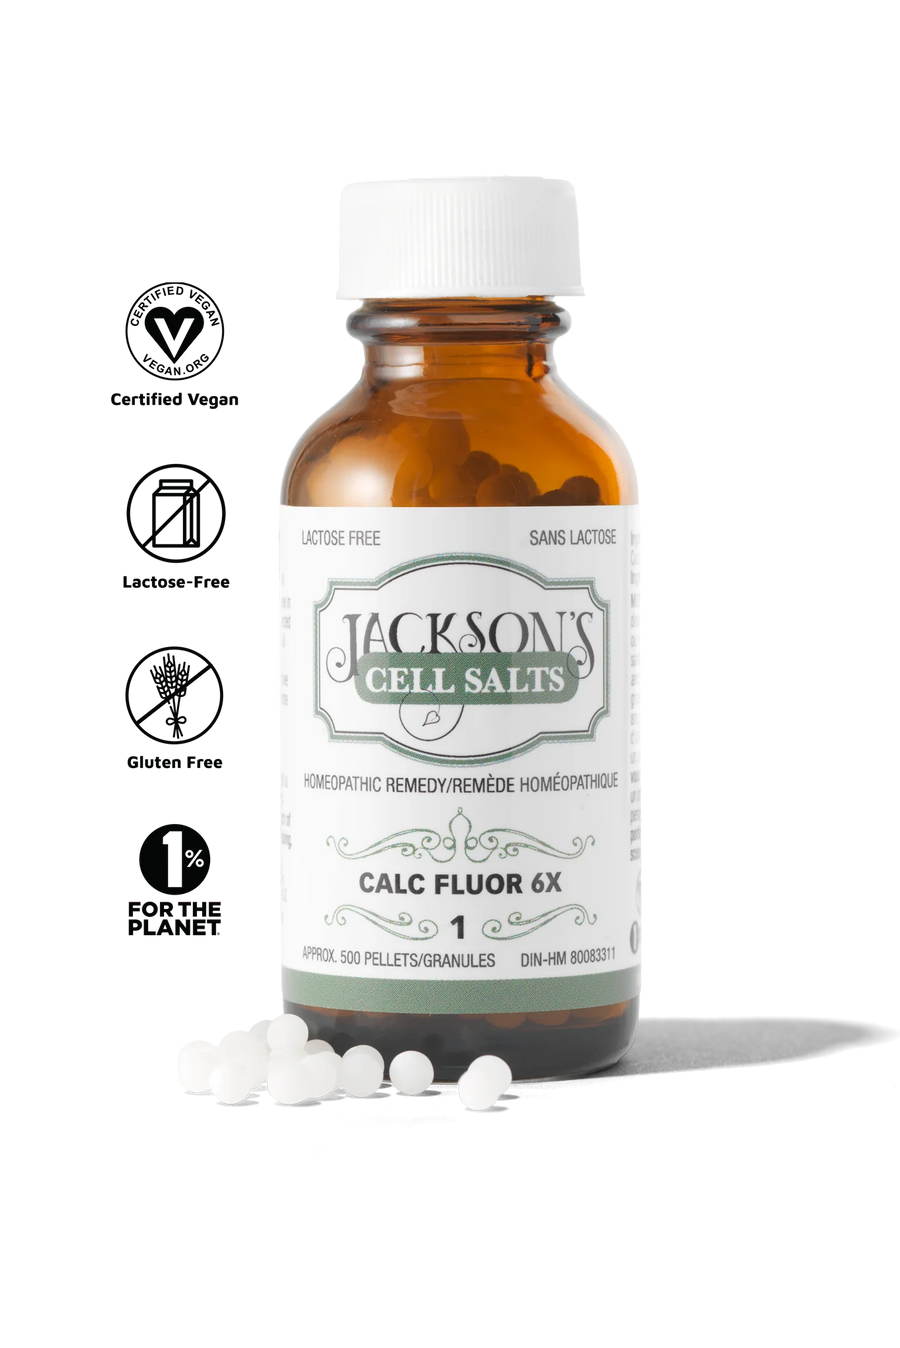 Jackson’s #1 Calc Fluor 6x (Calcium Fluoride) Schuessler Mineral Cell Salt